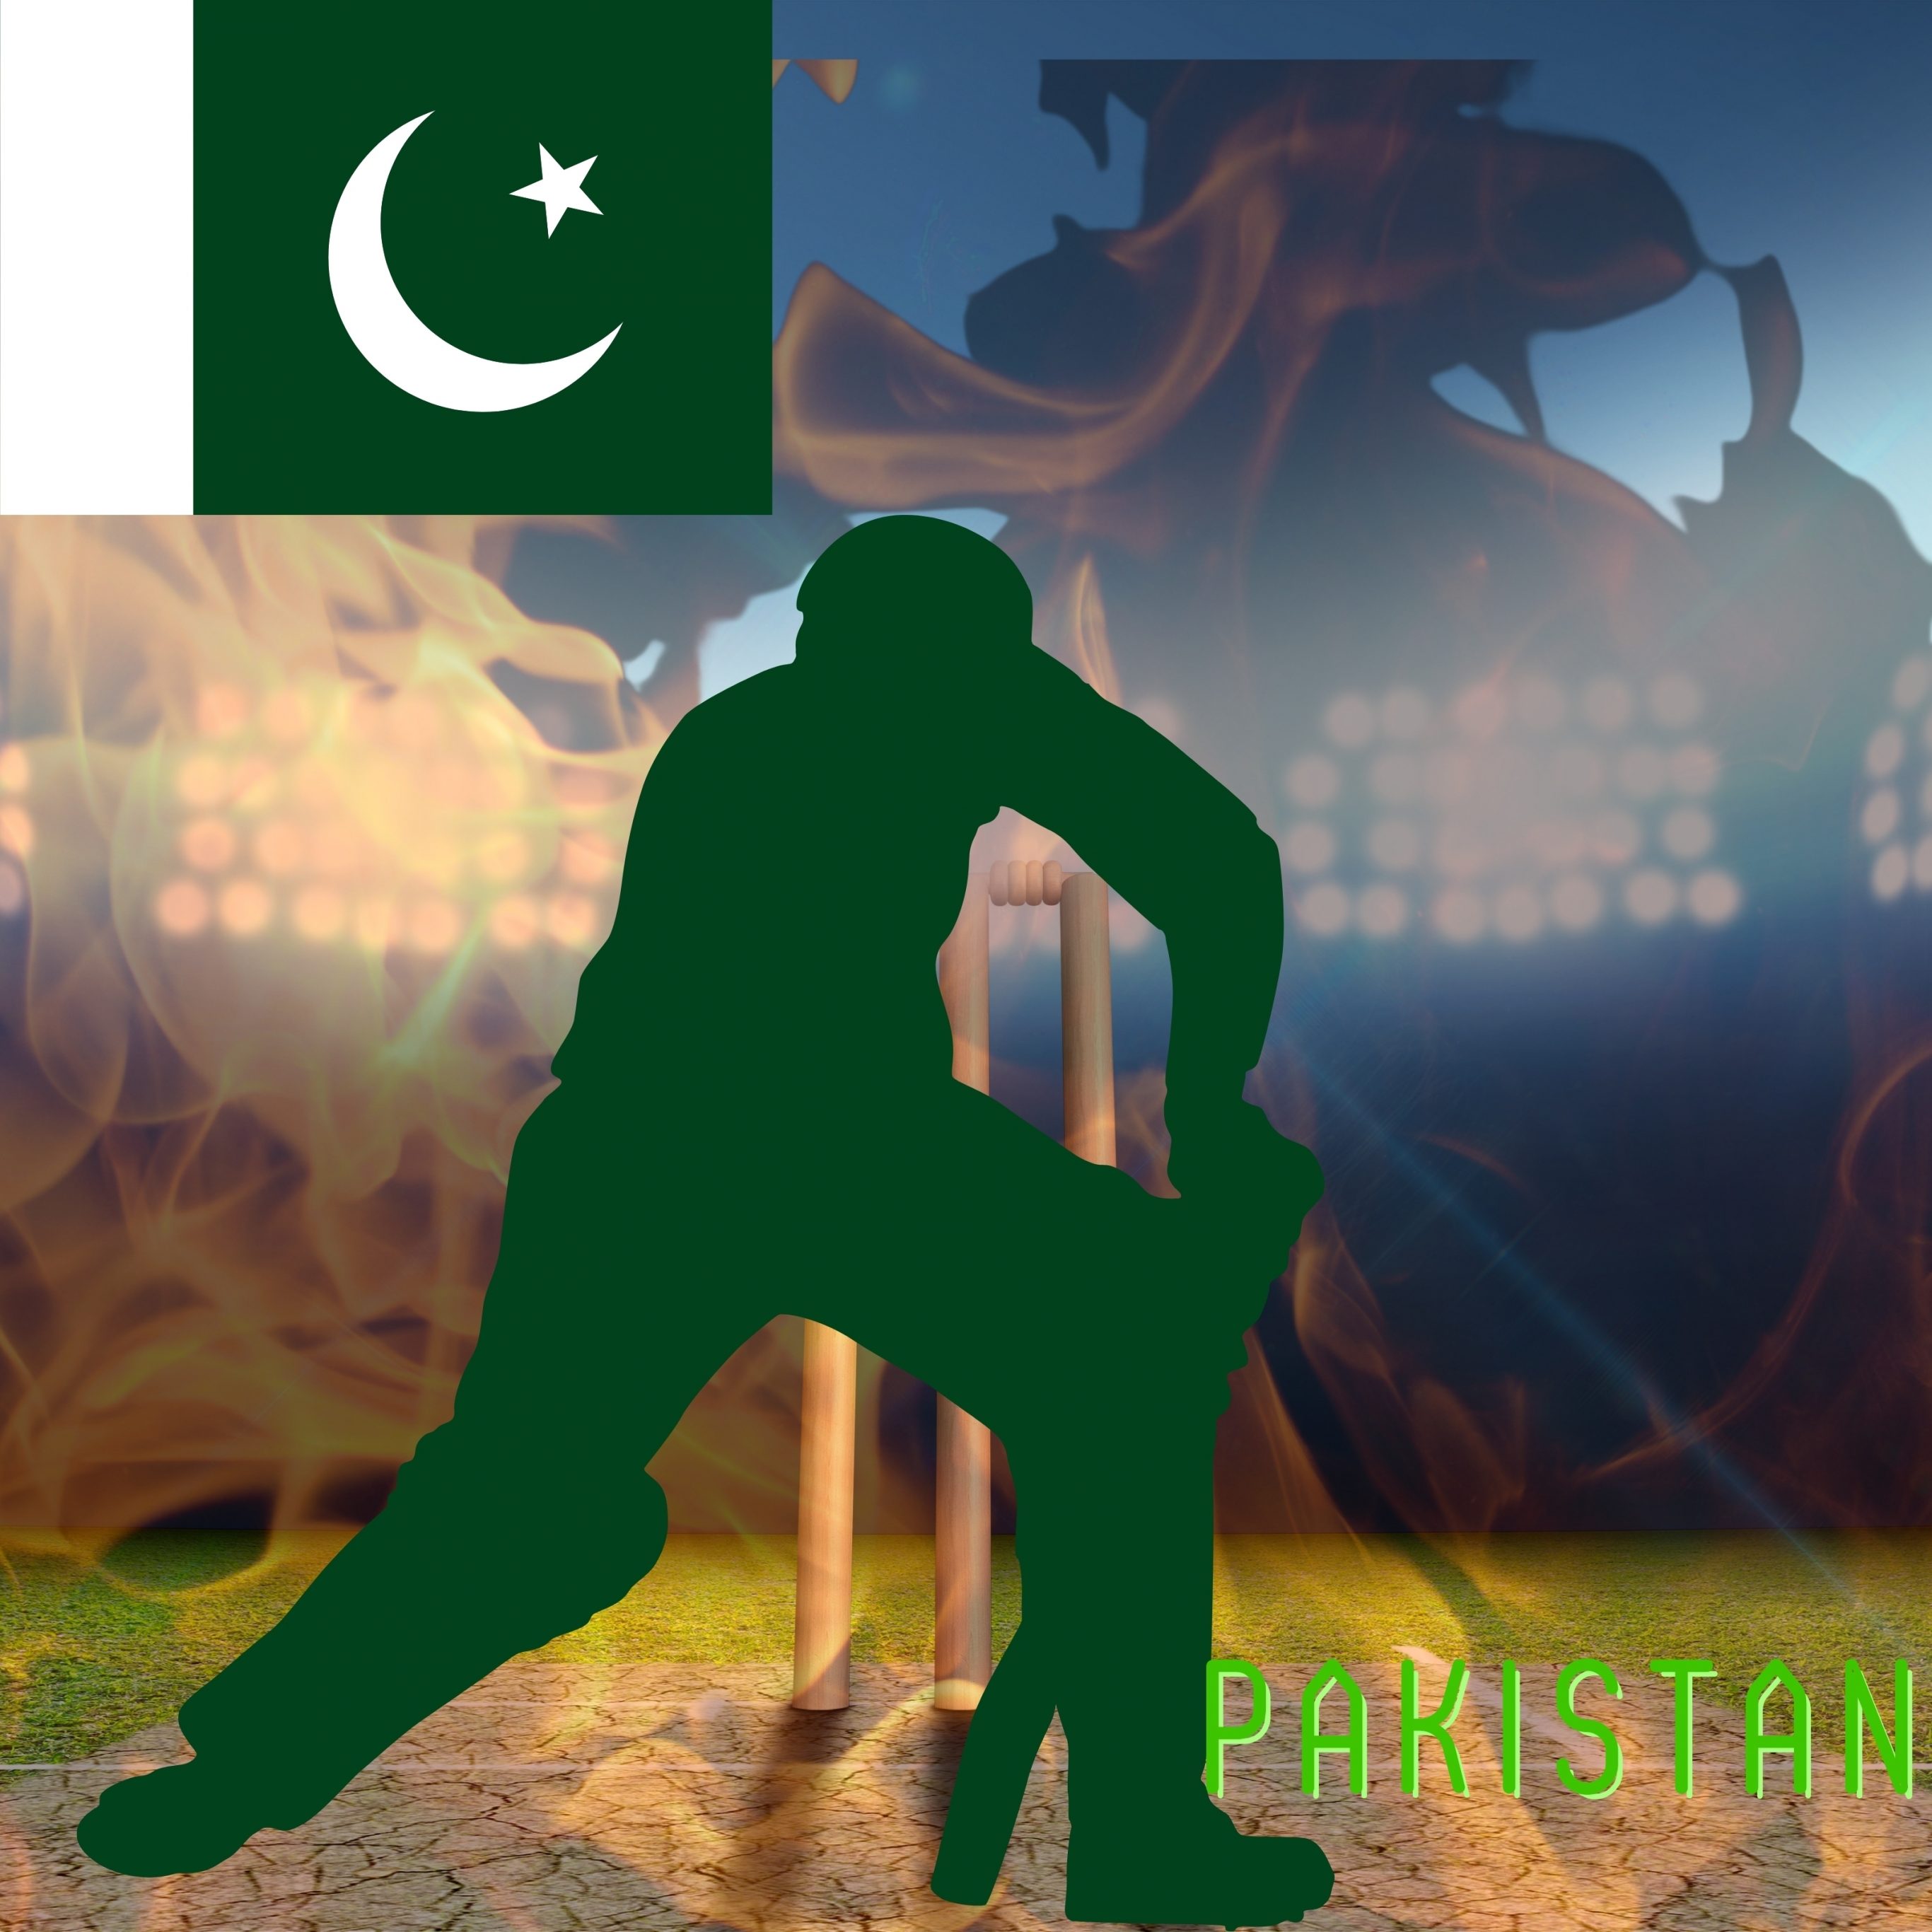 iPad Pro 12.9 wallpapers Pakistan Cricket Stadium iPad Wallpaper